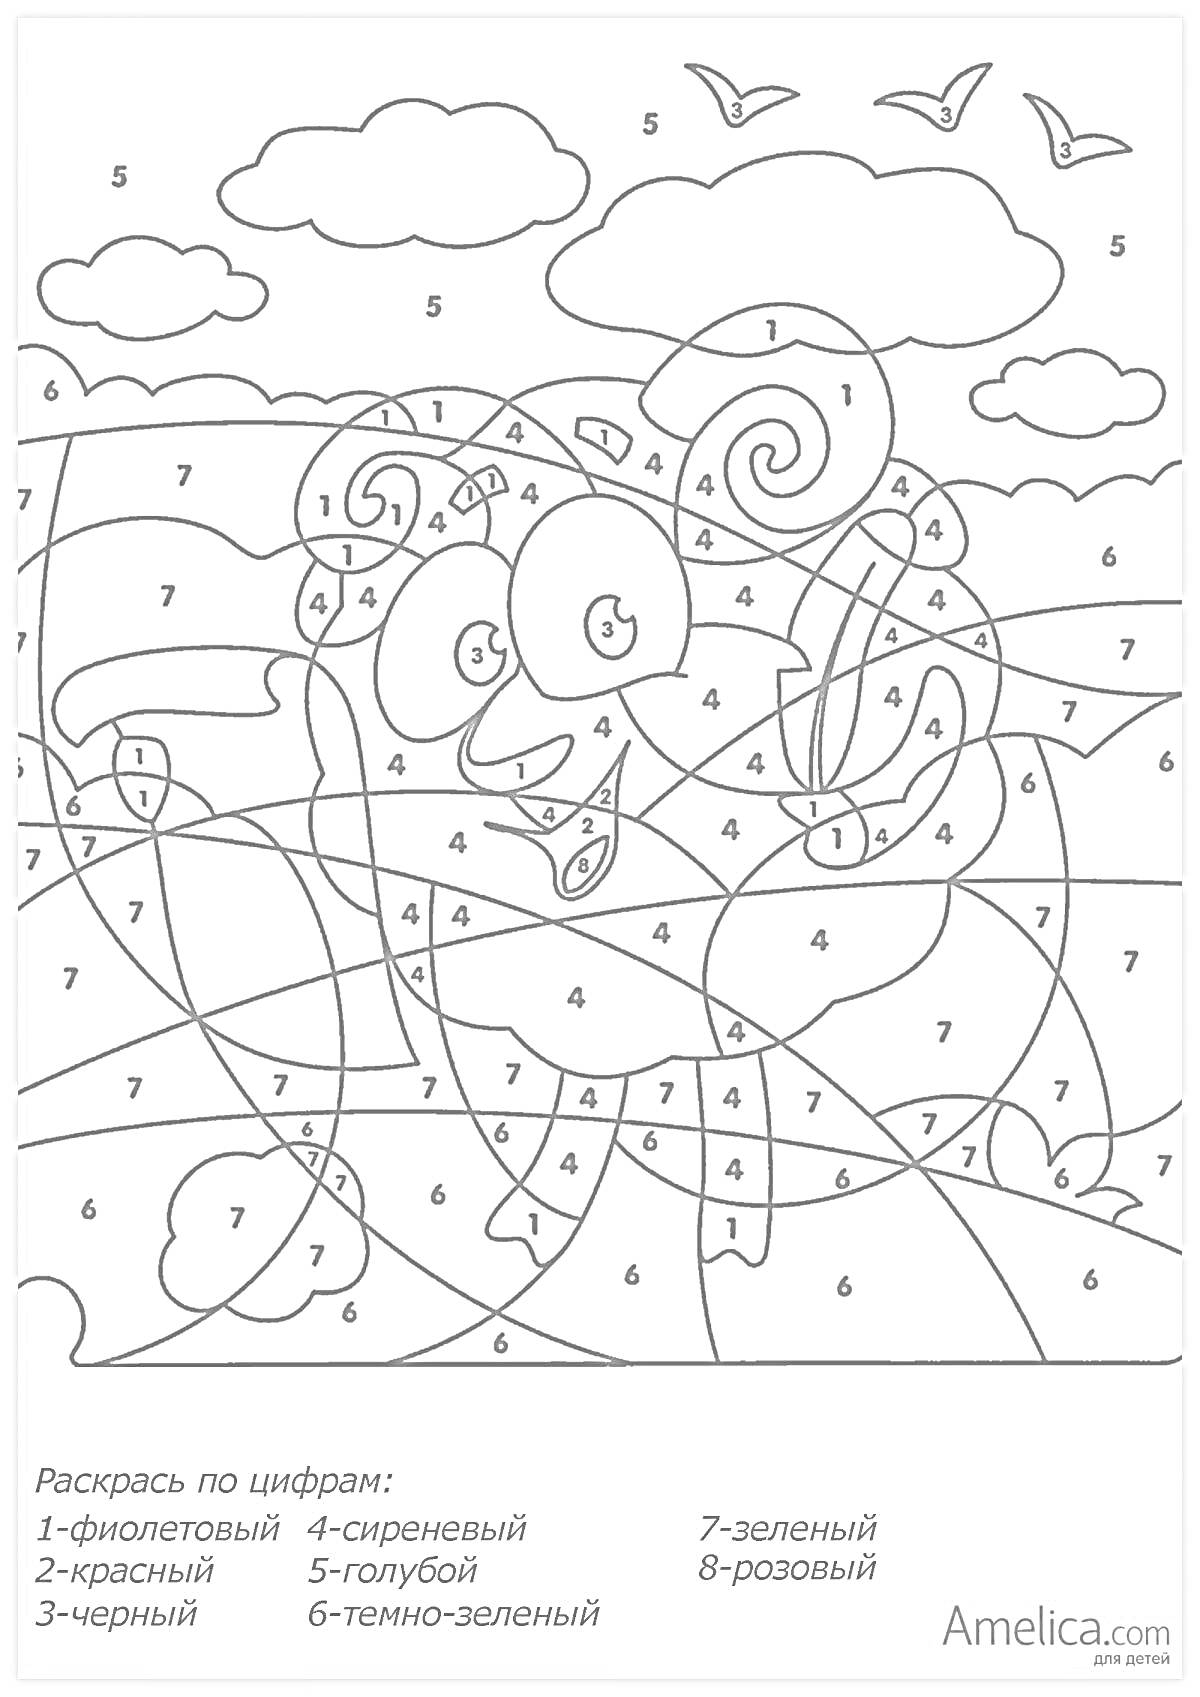 Раскраска Раскраска по цифрам для детей 6-7 лет с барашком и облаками###